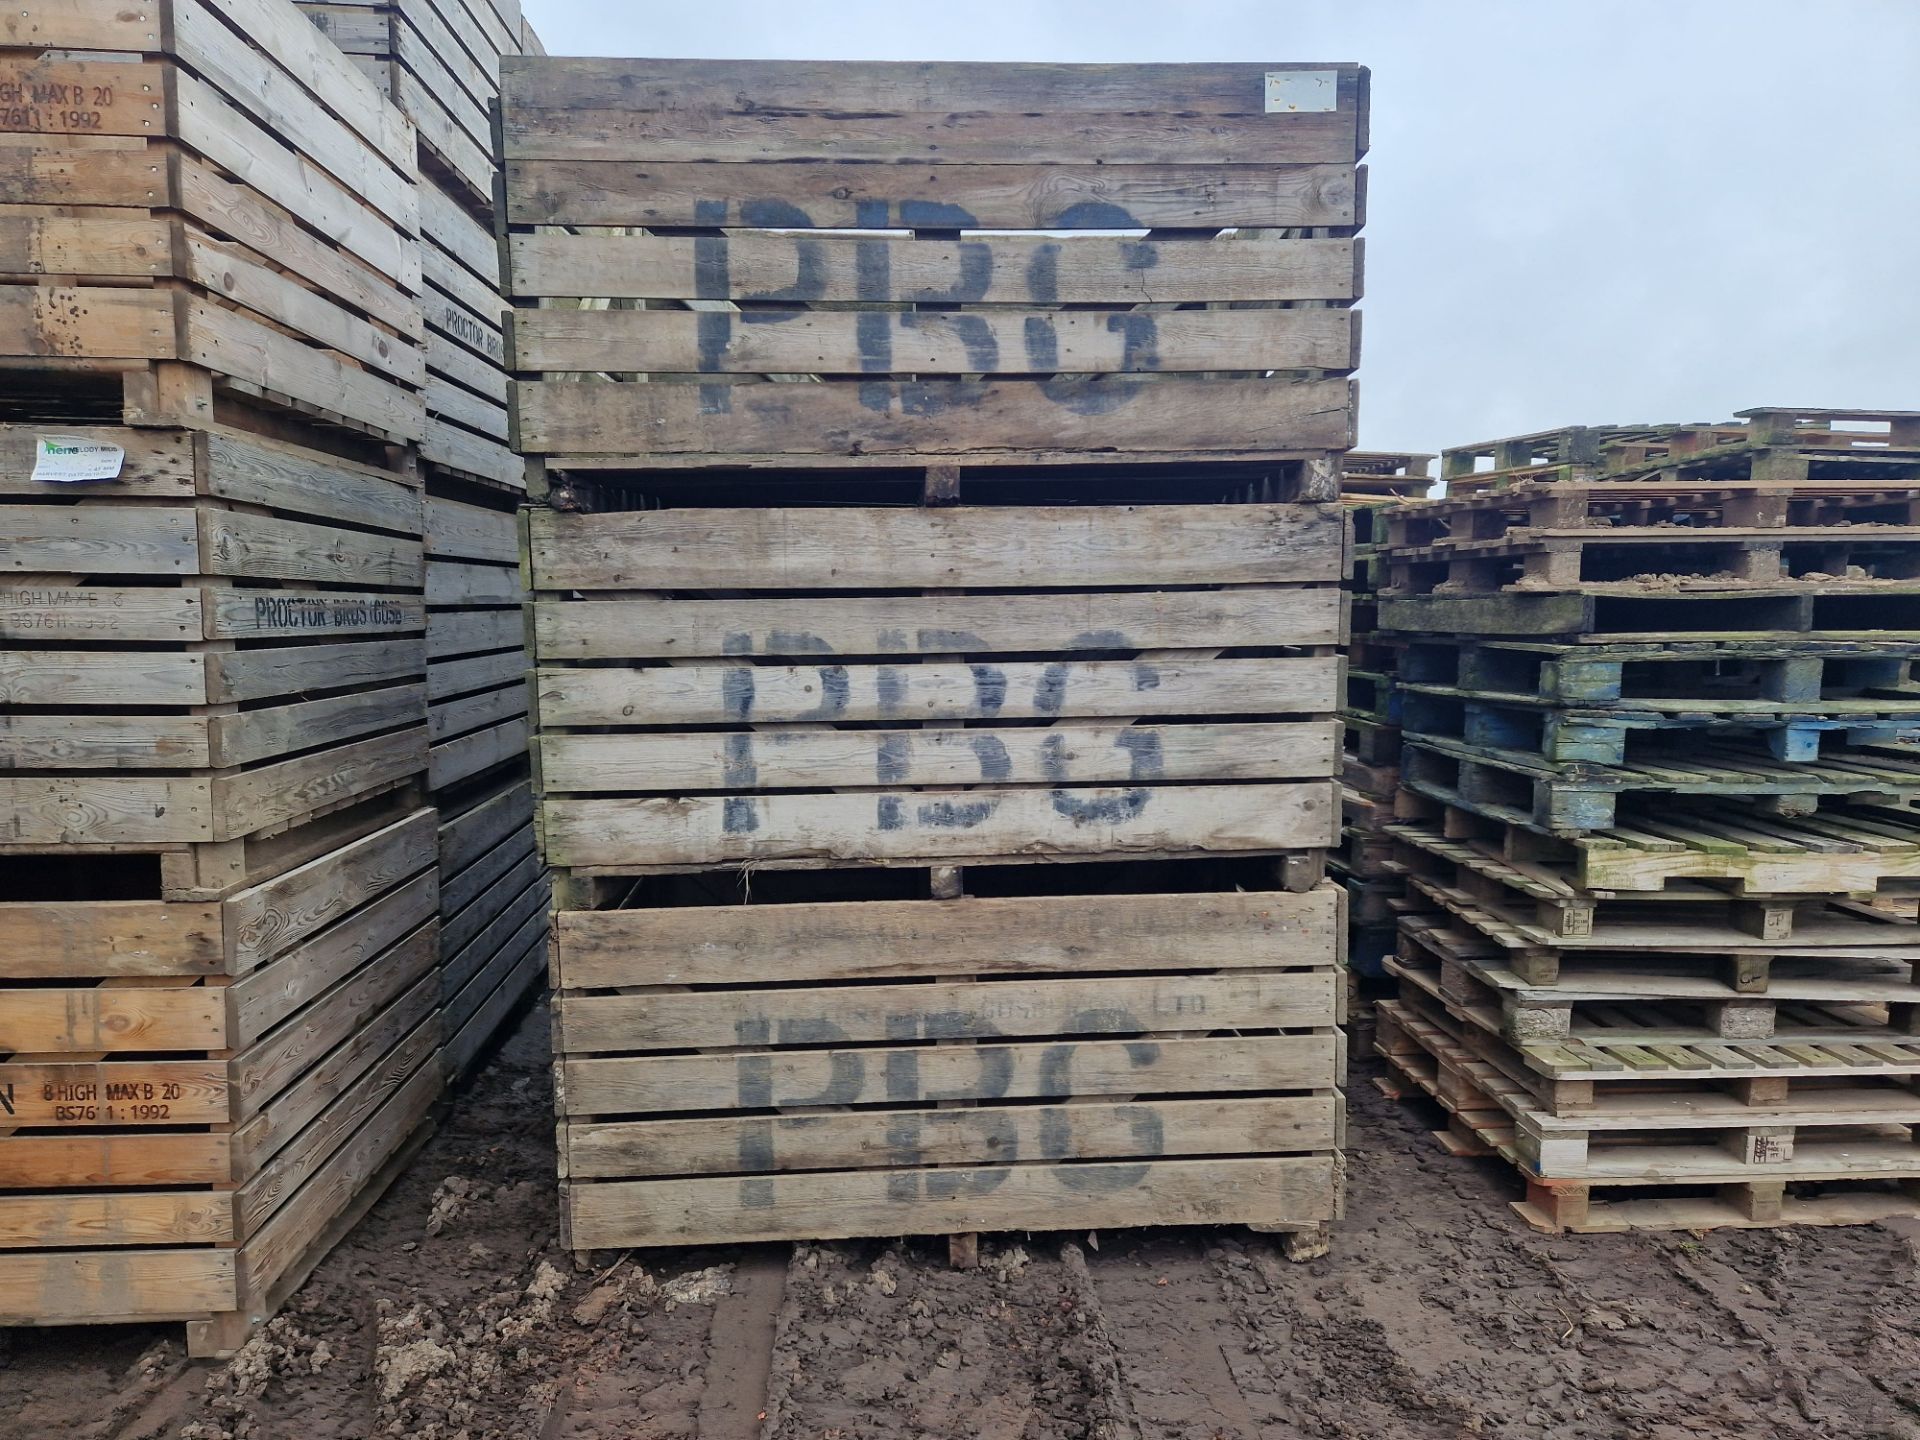 42 x 1 ton potato boxes